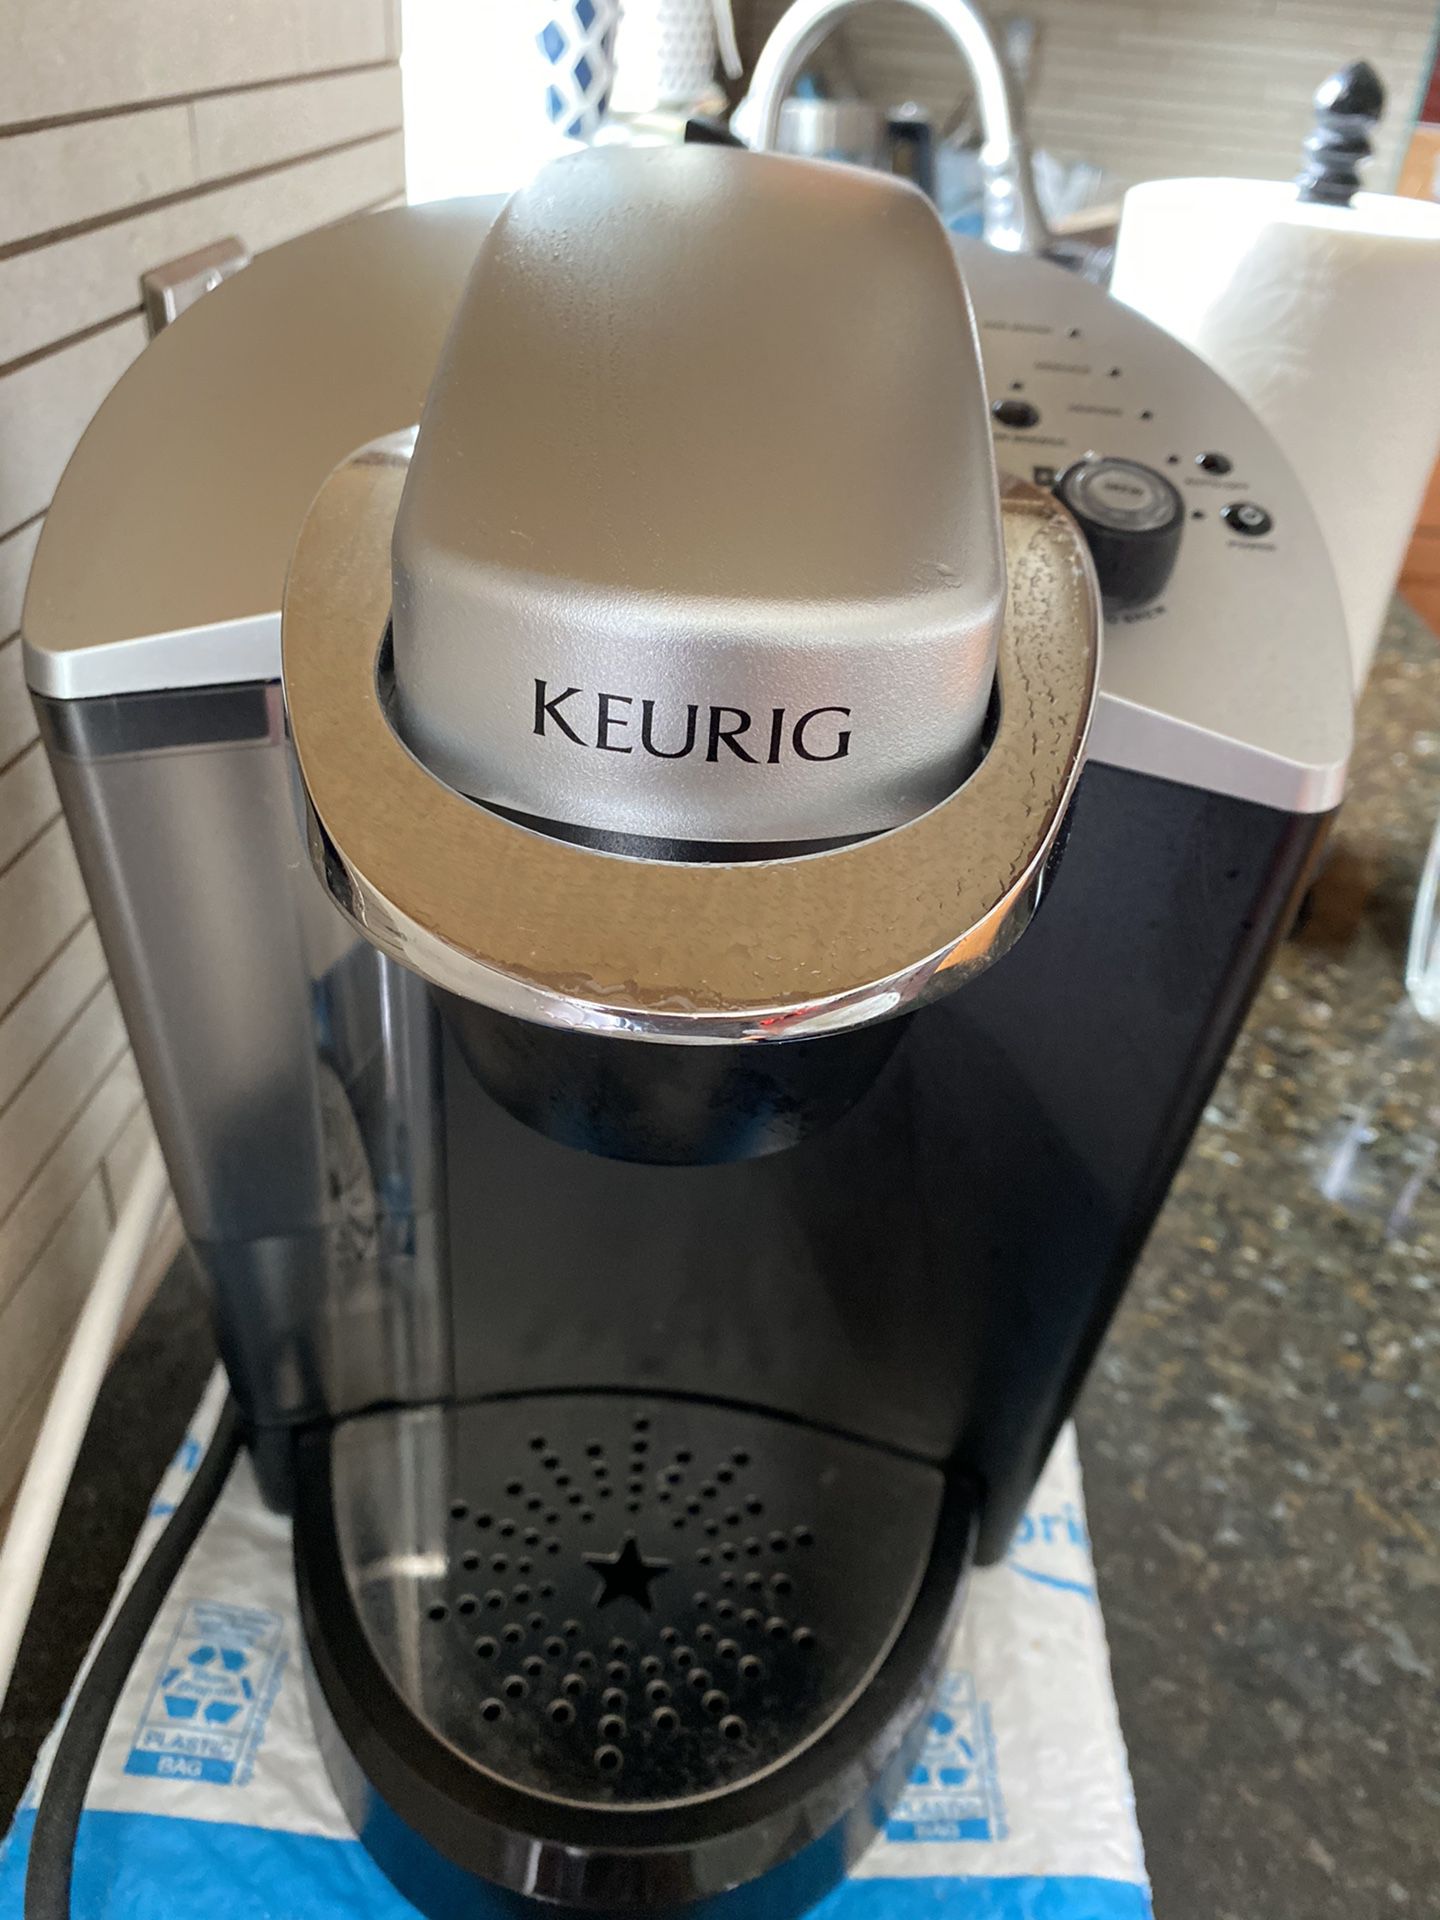 Keurig coffee and Tea maker